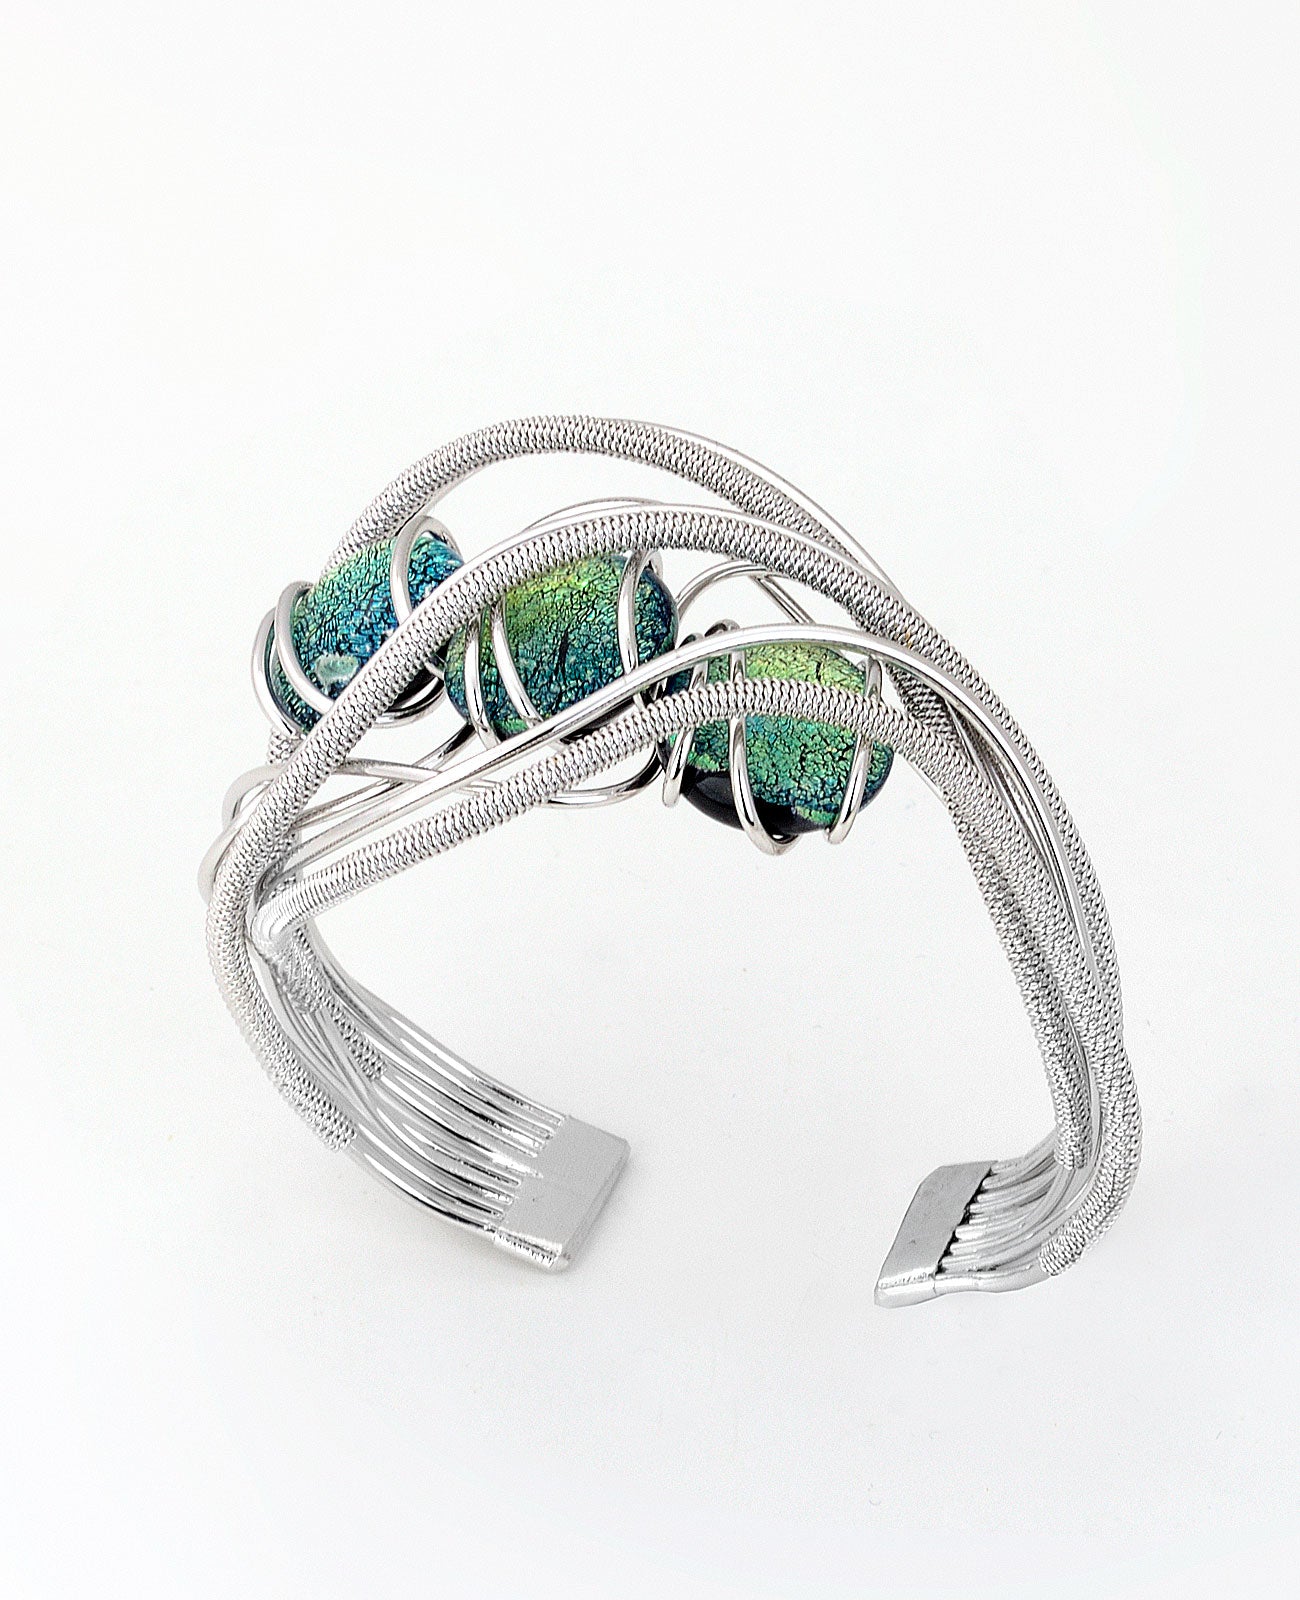 3 Reflex Bracelet in Murano Glass - Vetri D'Arte